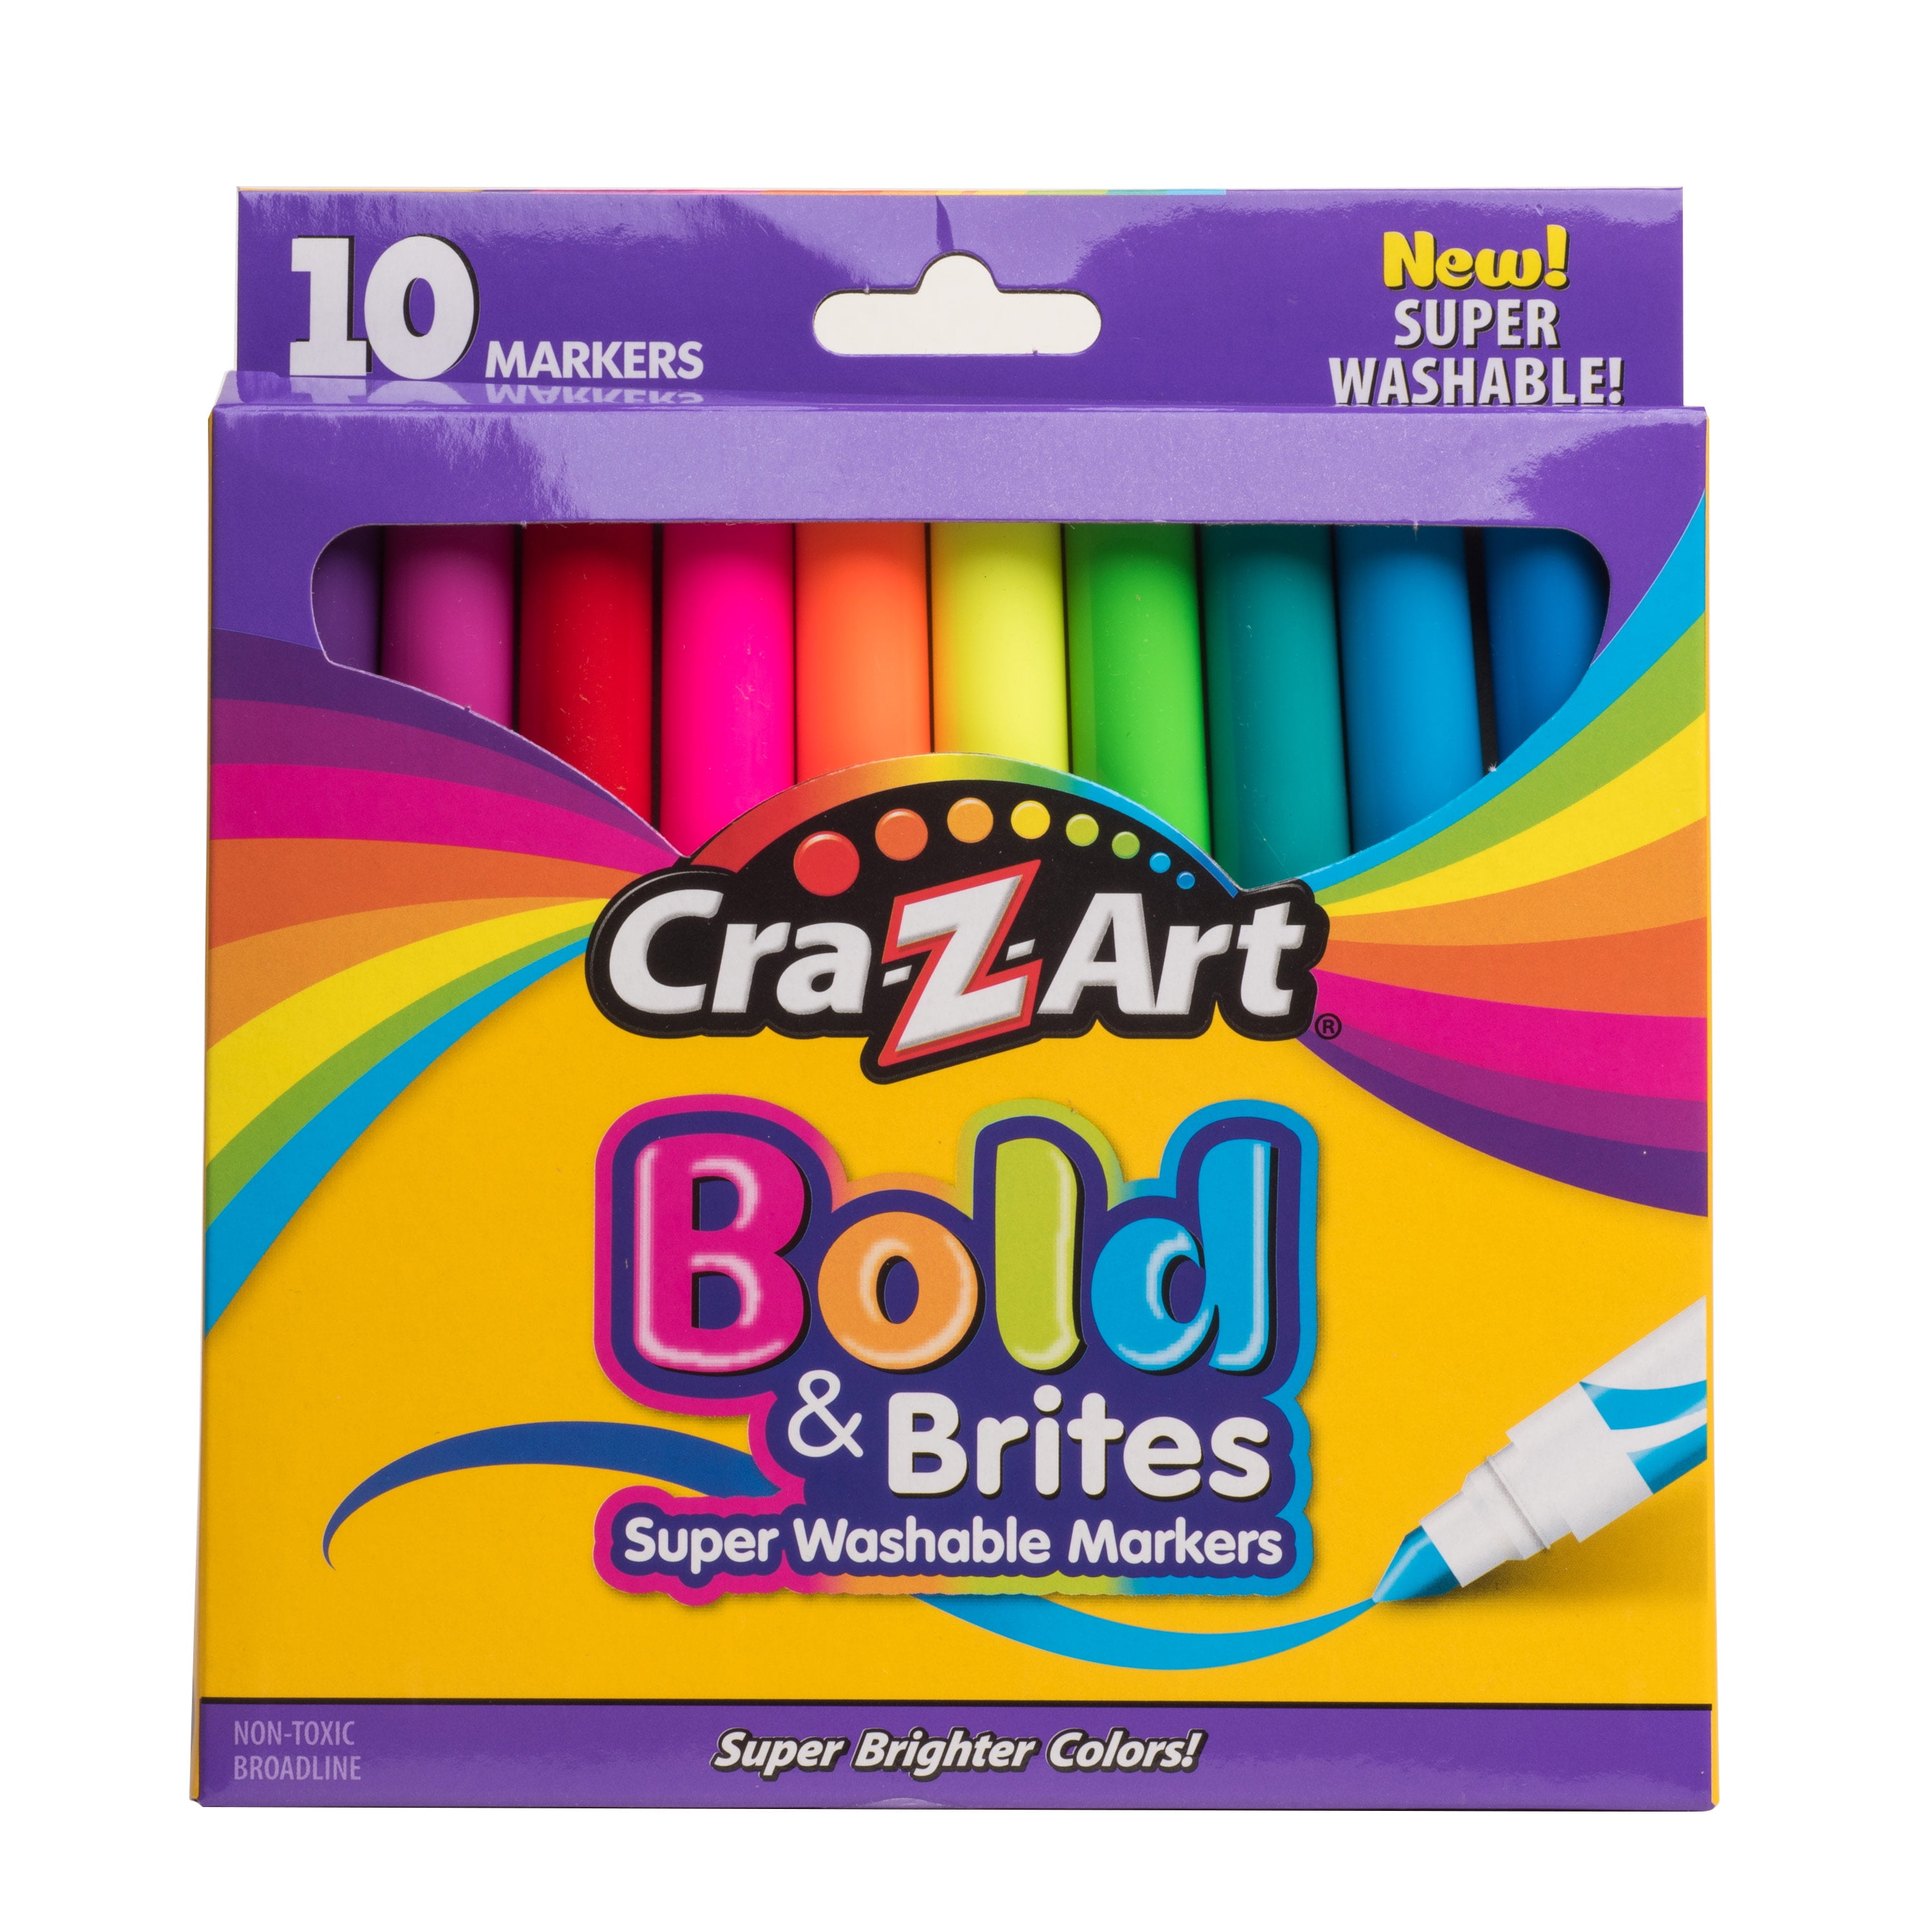 Cra-Z-Art Super Washable Markers, Broad Bullet Tip, Assorted